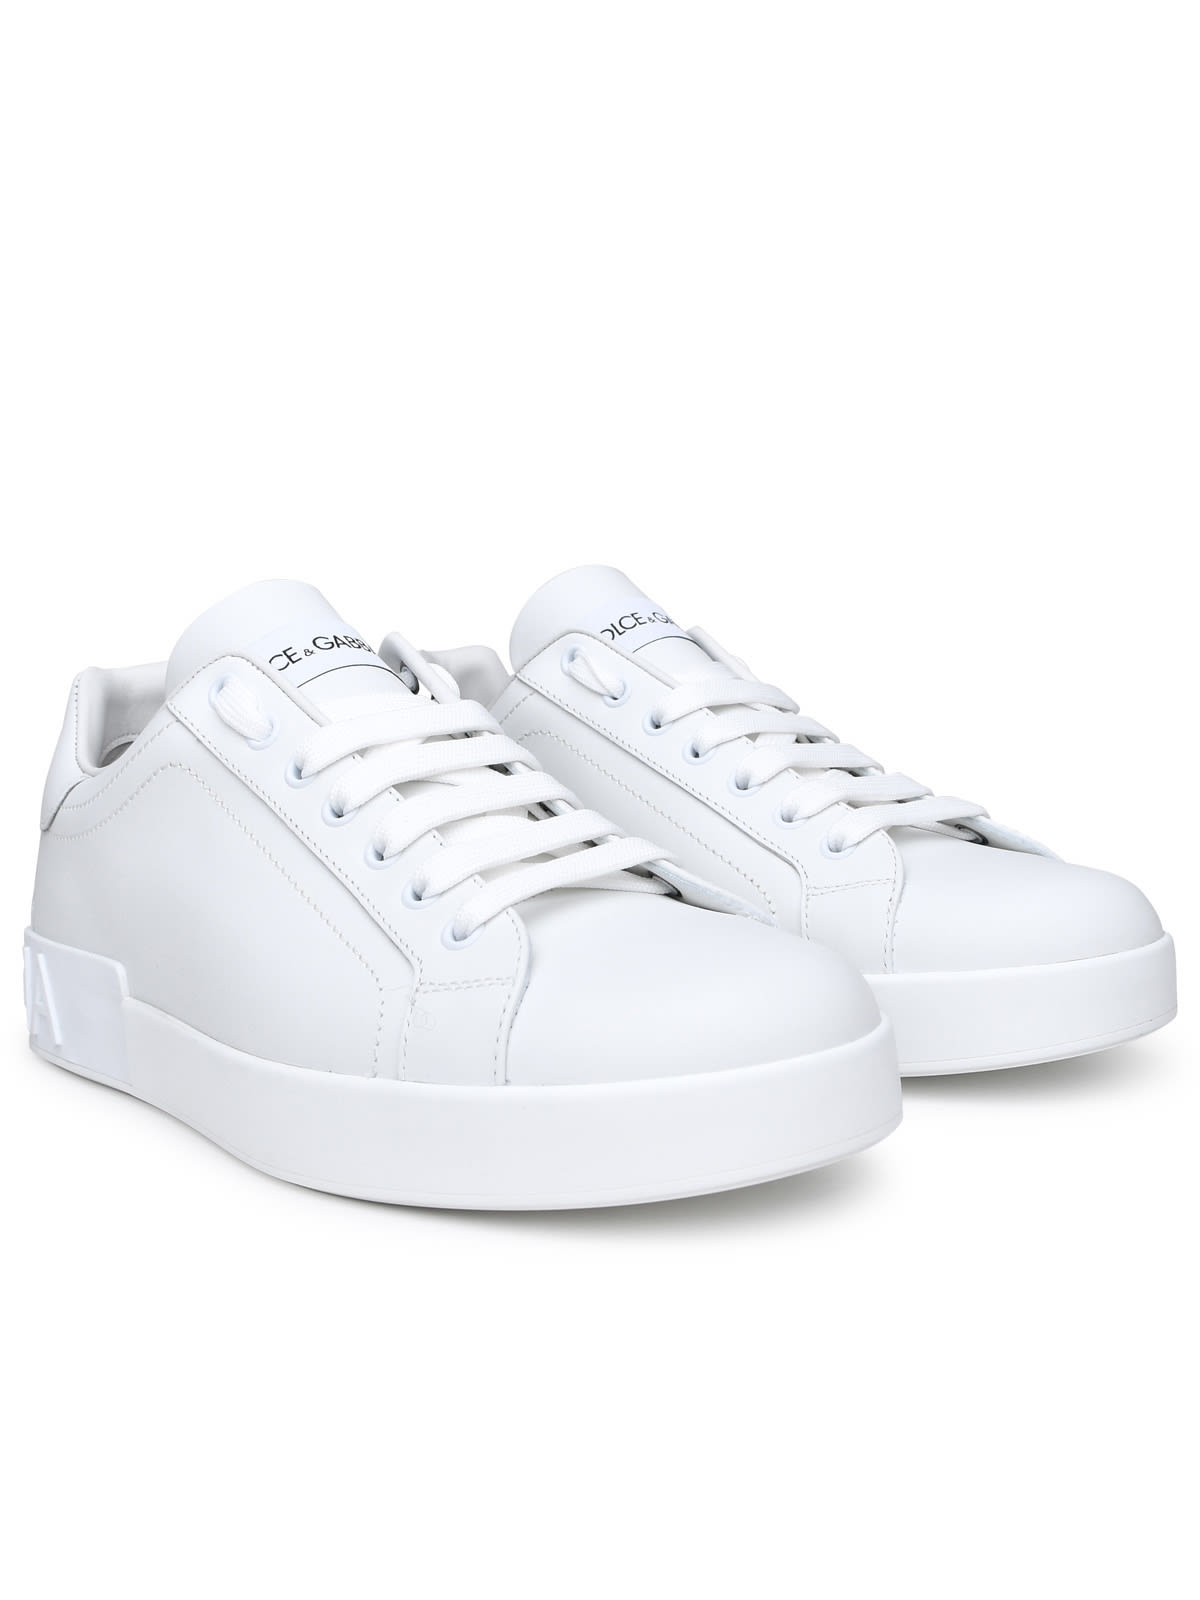 Shop Dolce & Gabbana Portofino White Leather Sneakers